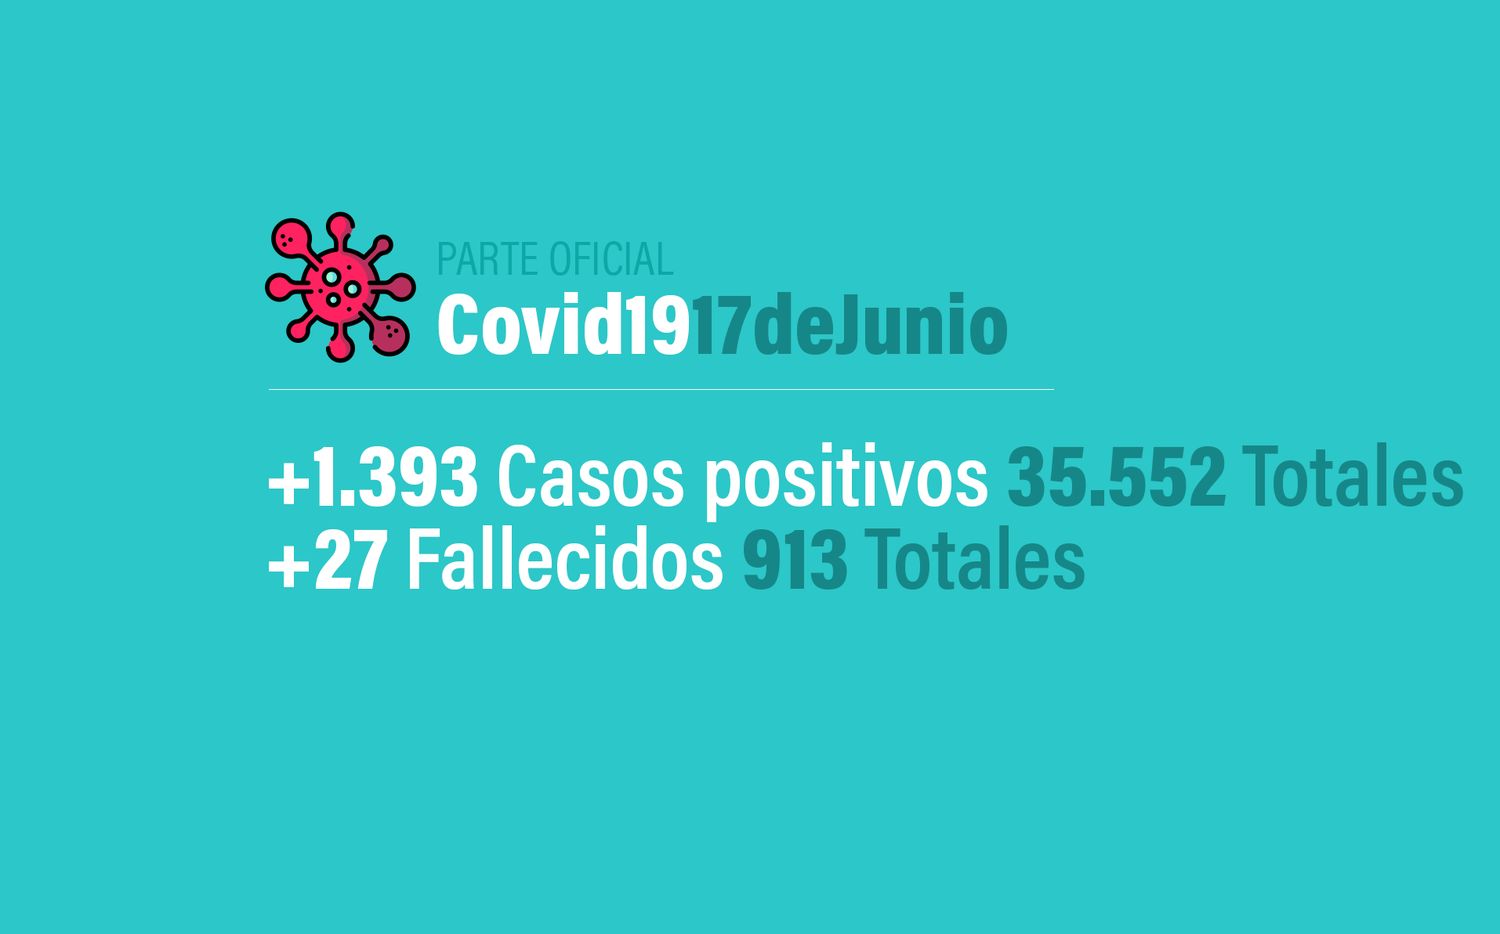 Coronavirus en Argentina: 1393 nuevos casos, 35552 confirmados y 913 muertes, al 17 de junio